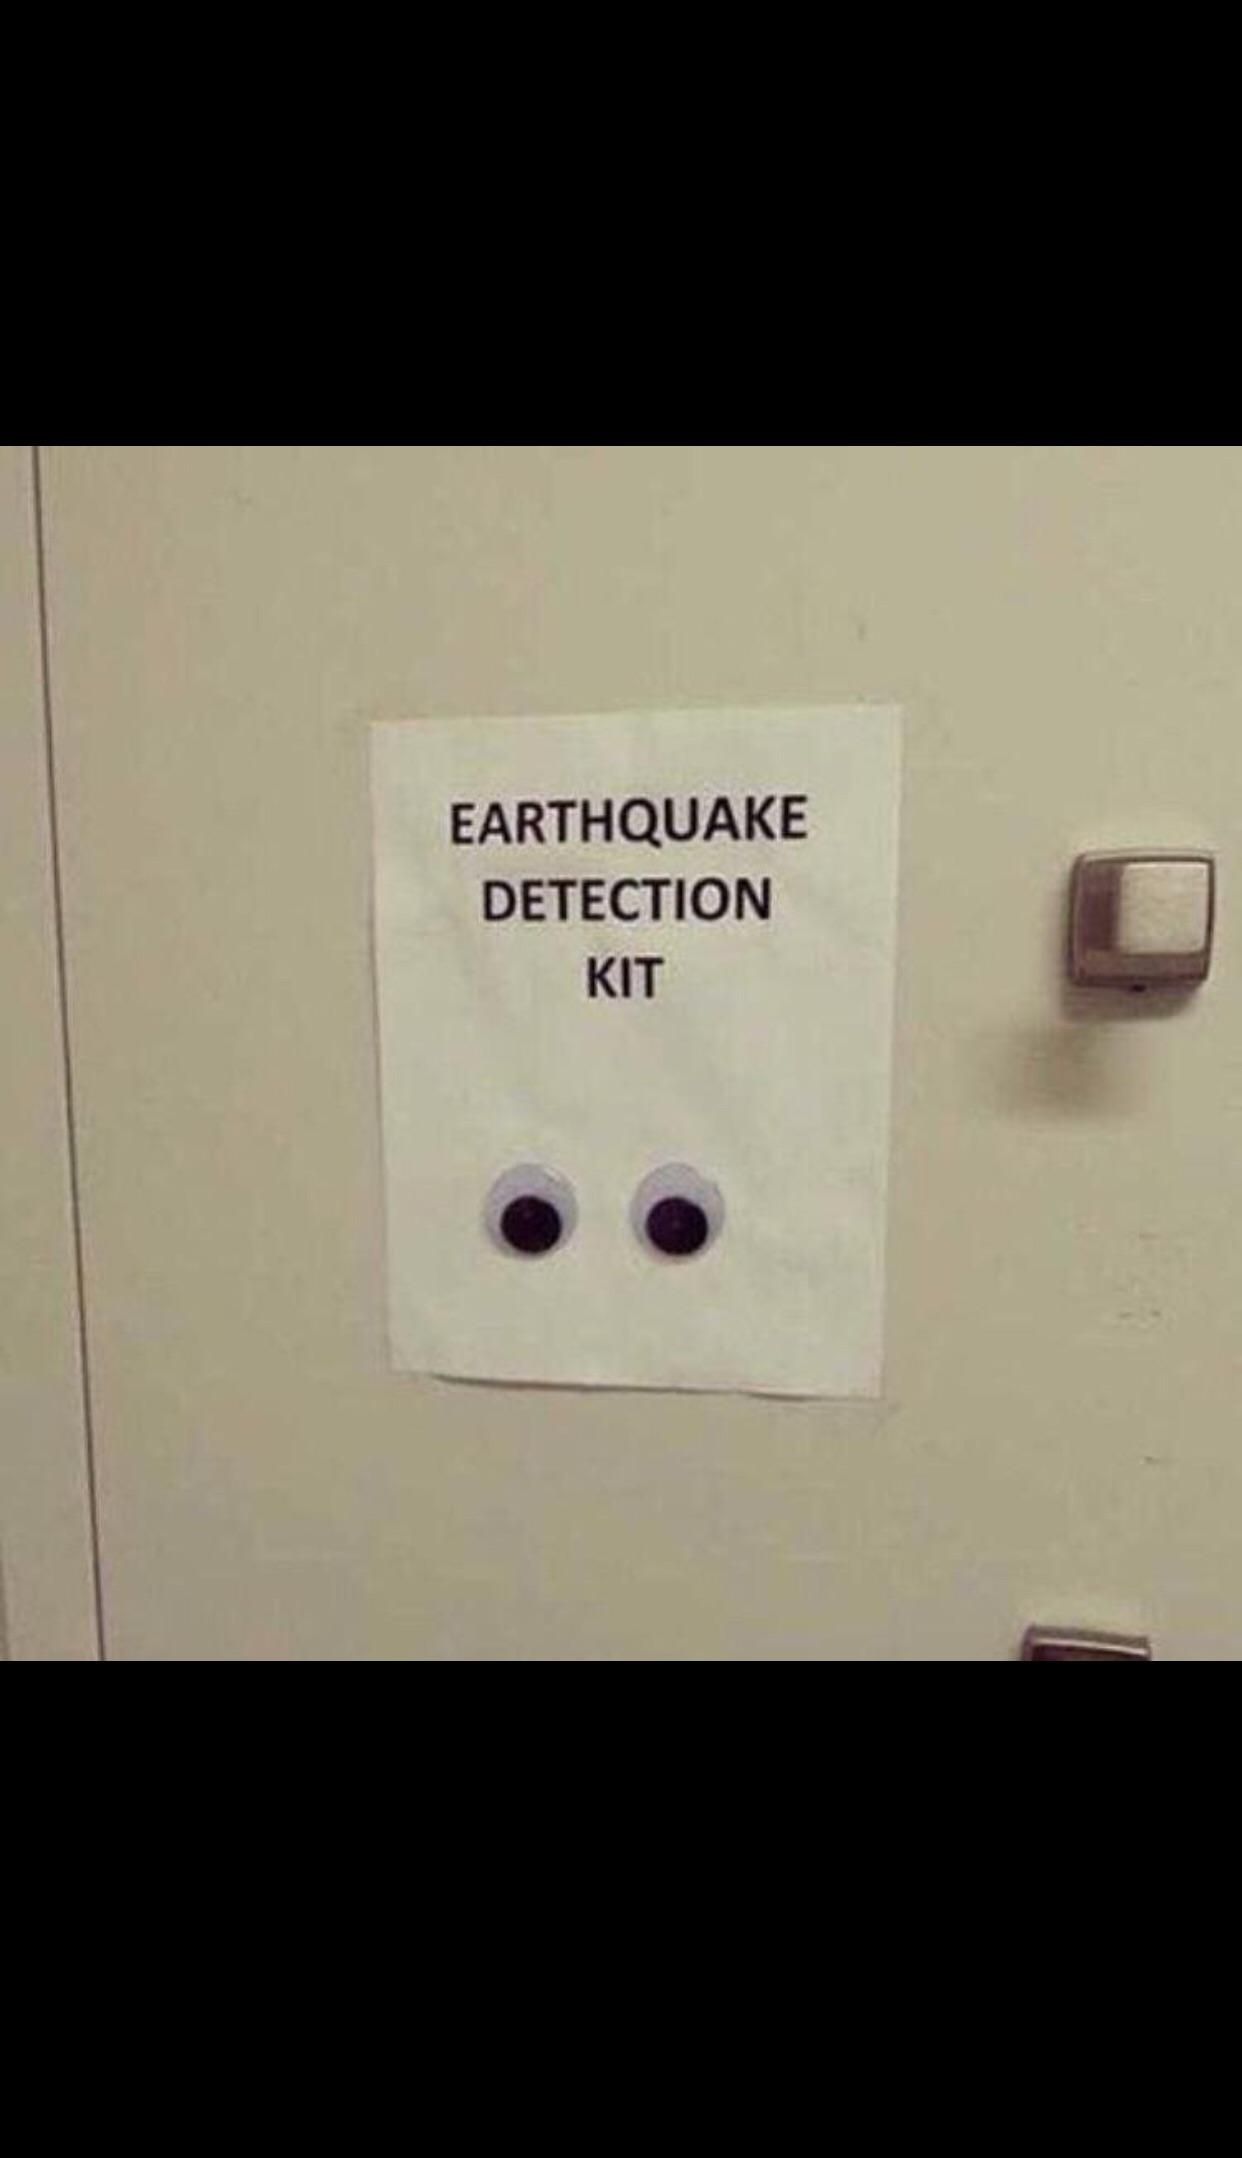 Revolutionary new earthquake detection kit...